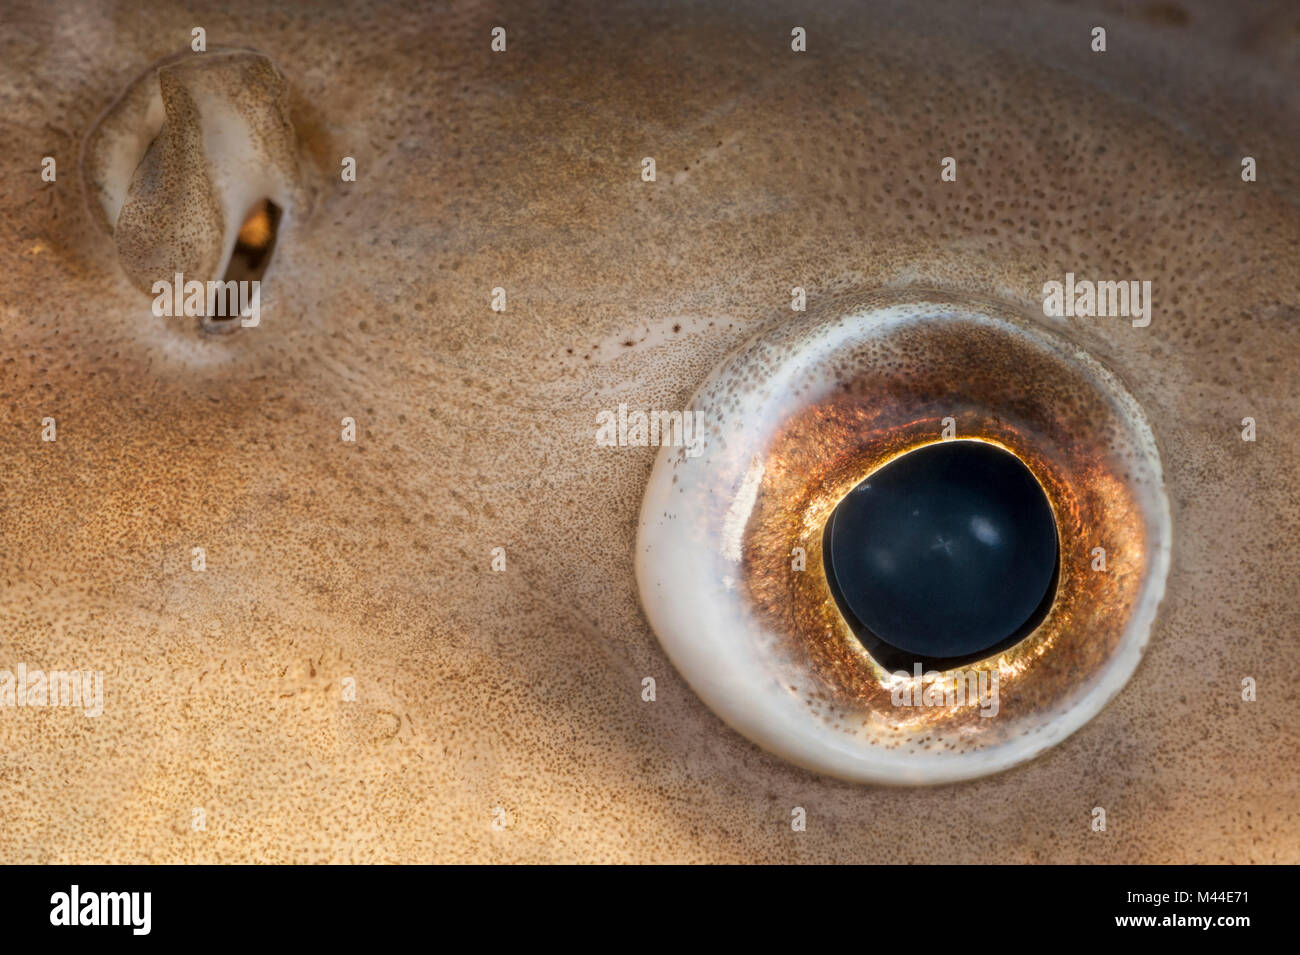 Barbel commun (Barbus barbus). Close-up de l'oeil et le nez. Allemagne Banque D'Images